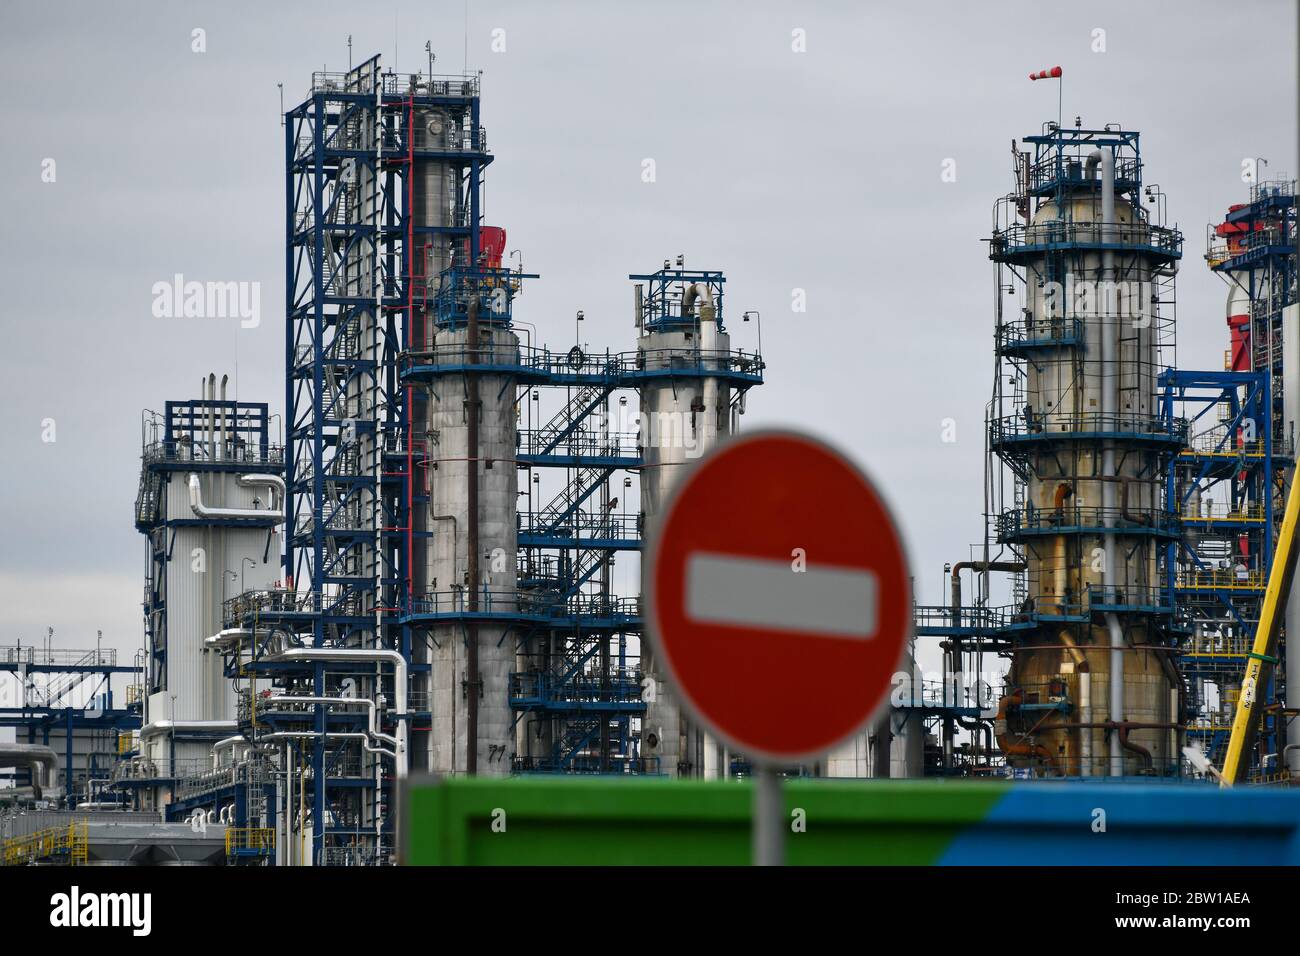 Moscú, Rusia. 2 de mayo de 2020. Tuberías de la refinería de petróleo de Moscú en la zona industrial Chagino-Kapotnya en Moscú, Rusia. Foto de stock